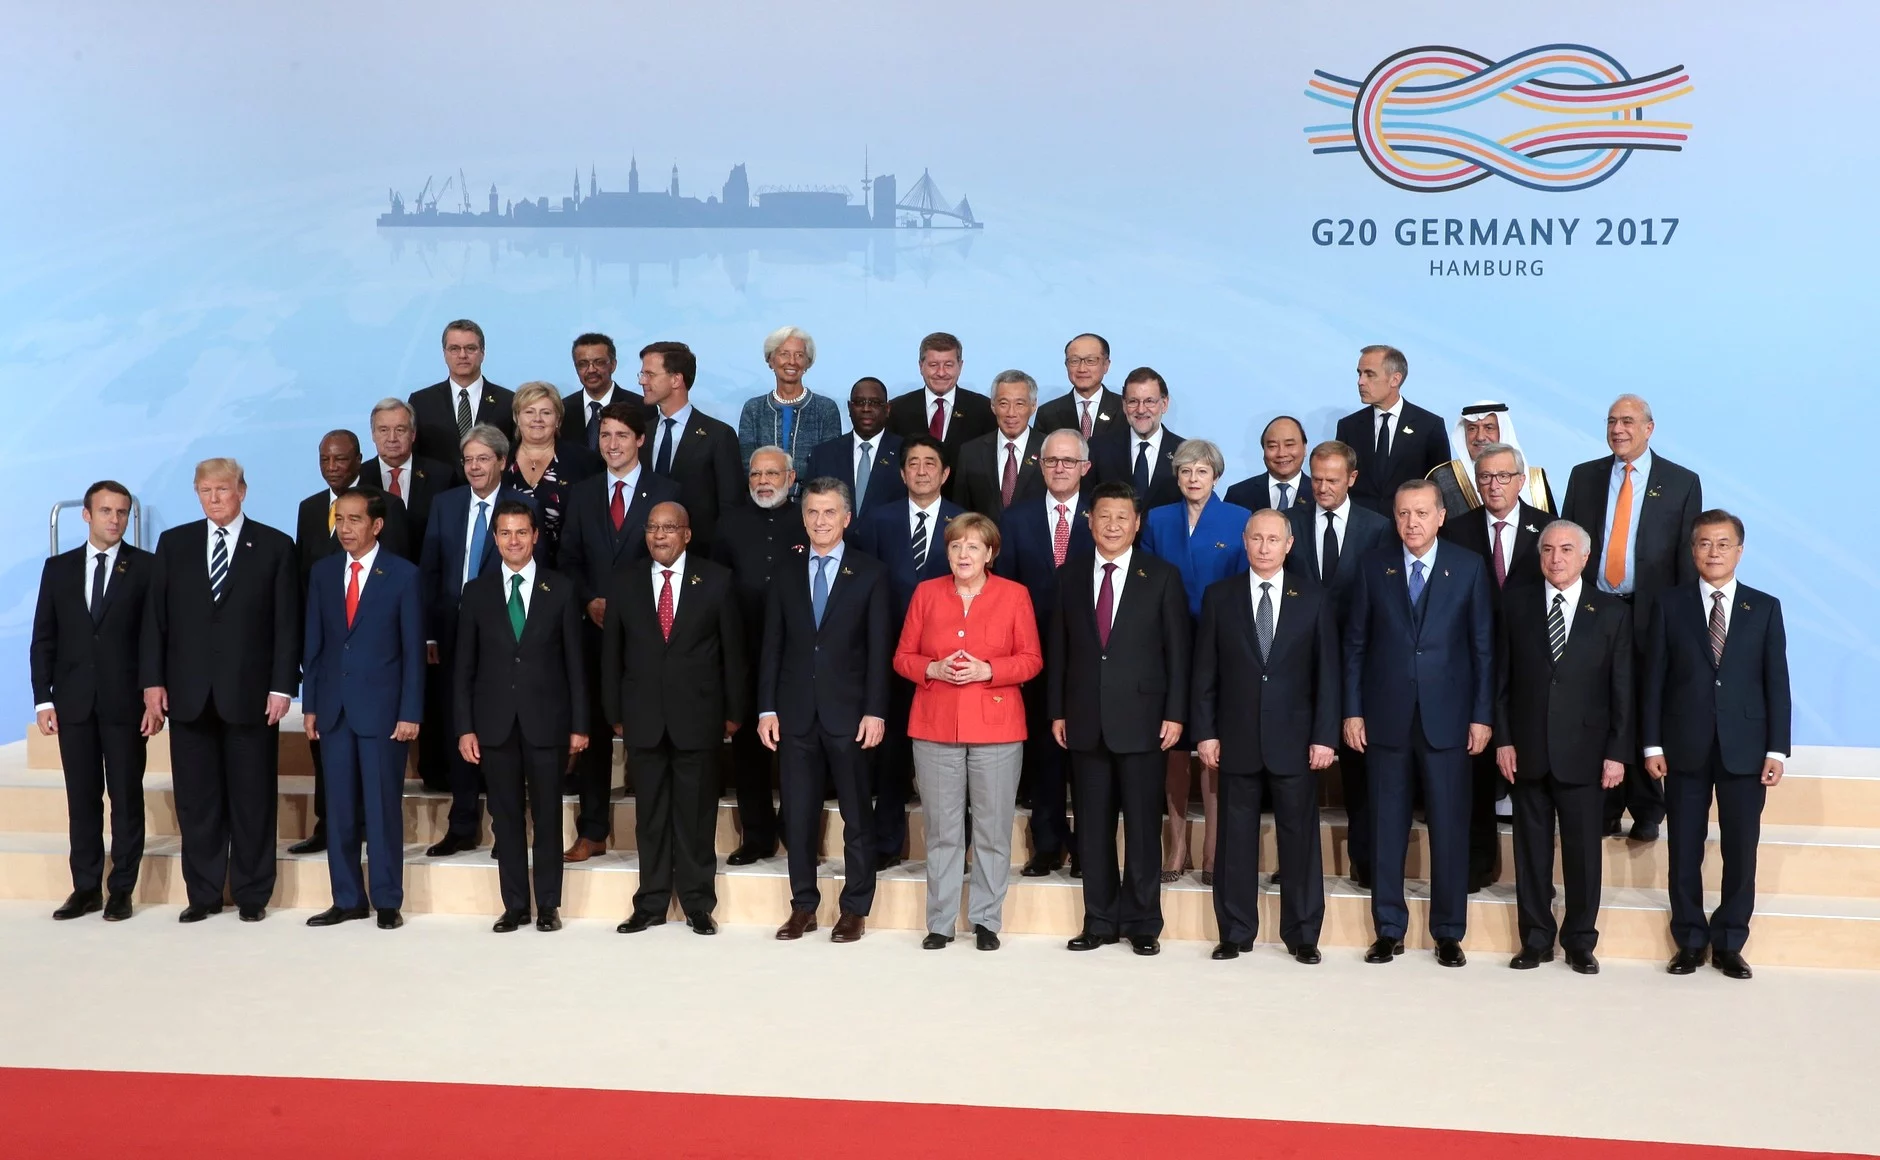 Les dirigeants mondiaux se réunissent pour une "photo de famille" au sommet du G20 à Hambourg (2017)